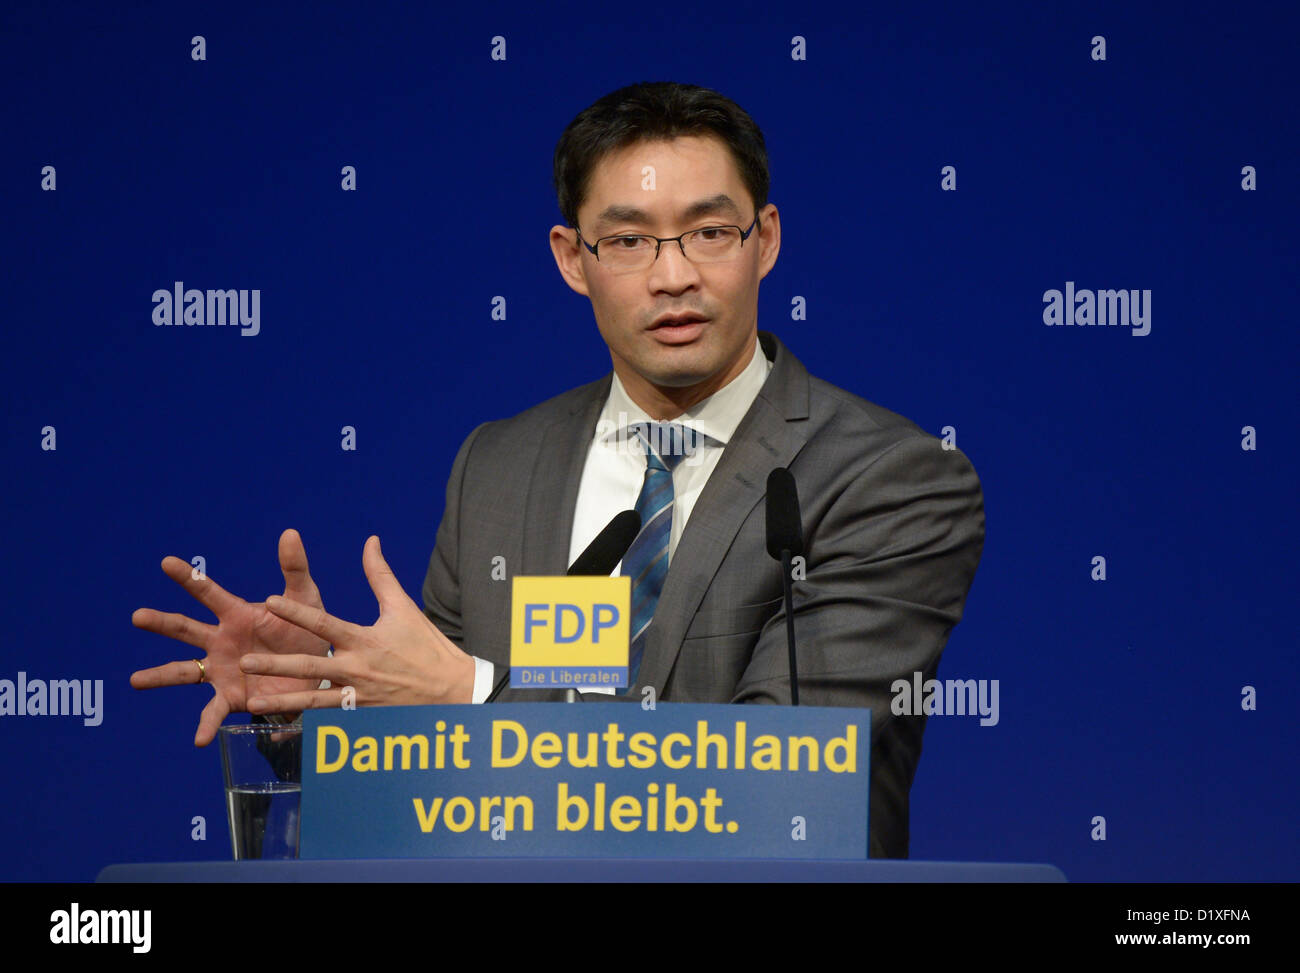 Le président du FDP, Philipp Roesler, prononce un discours lors de la conférence annuelle de l'épiphanie de la FDP, parti à Stuttgart, Allemagne, le 6 janvier 2013. Photo : Michael Kappeler Banque D'Images